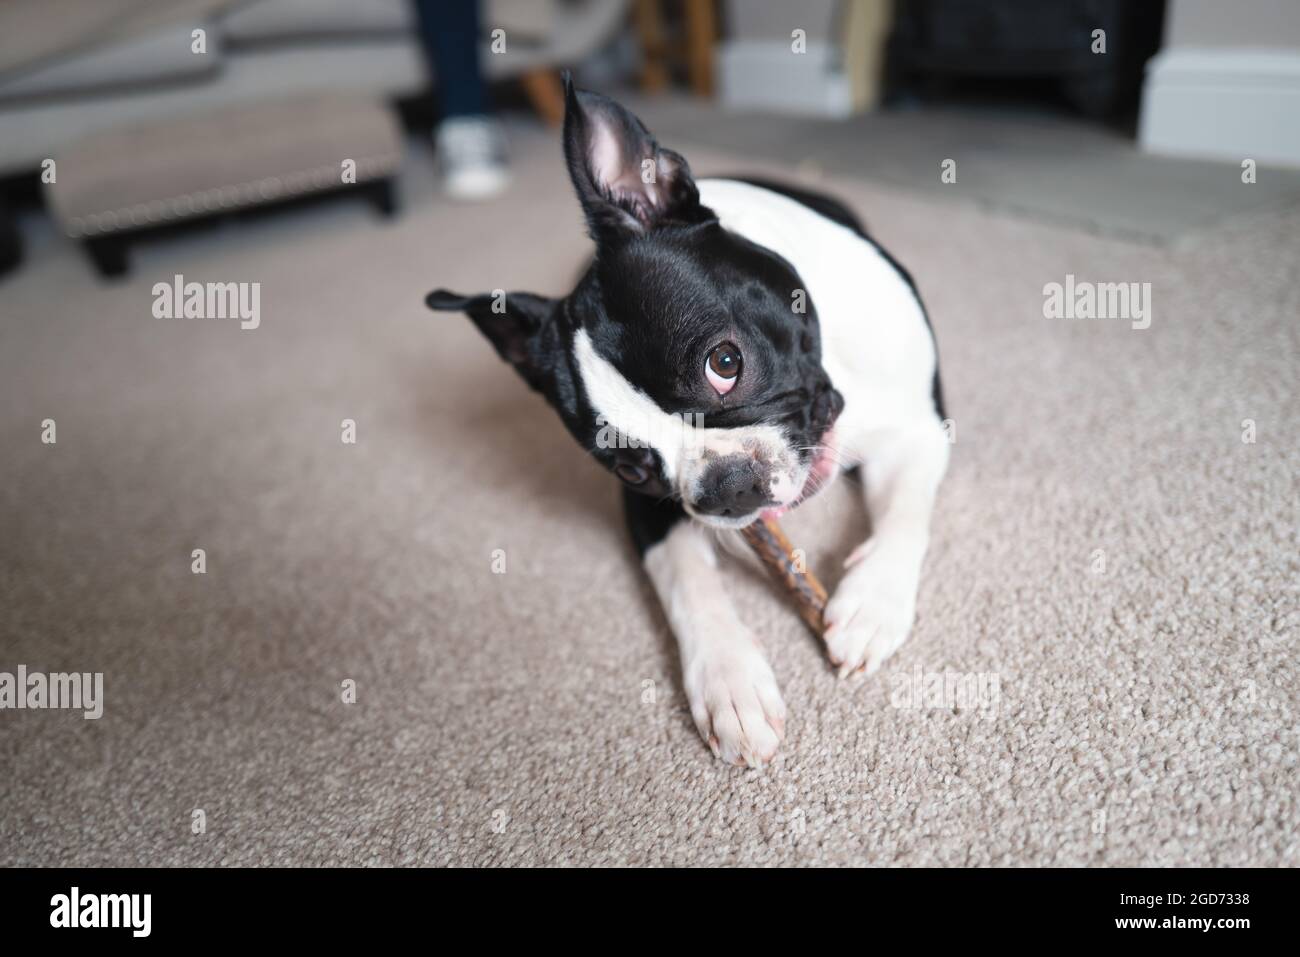 Il cucciolo di Boston Terrier giace sul pavimento masticando un bastone, guardando verso la luce della finestra Foto Stock